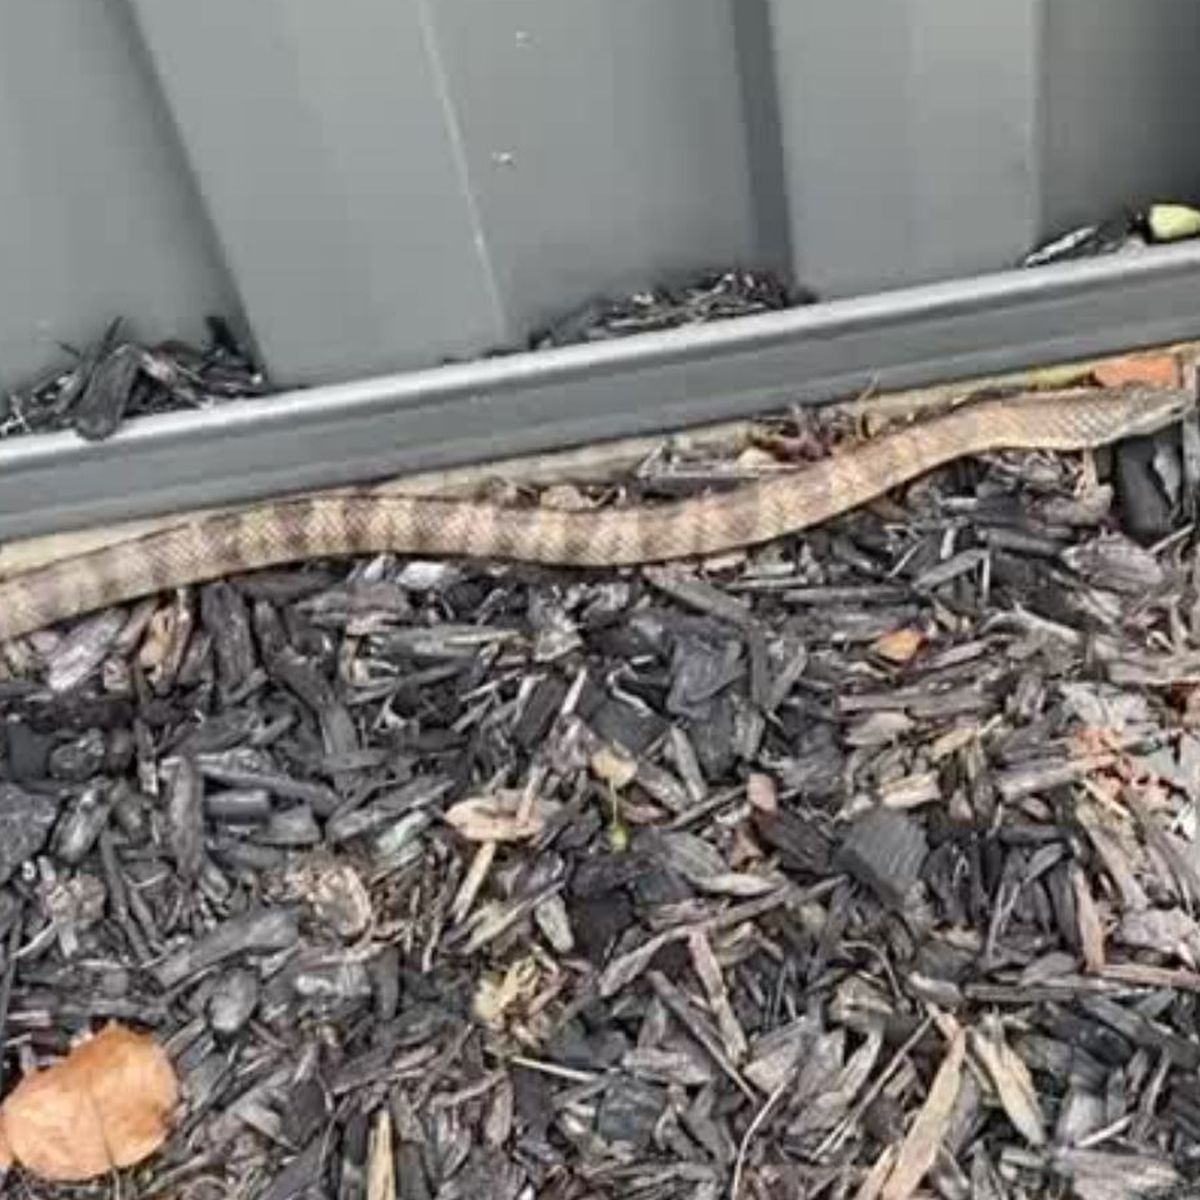 Melbourne resident finds deadly tiger snake in toilet bowl